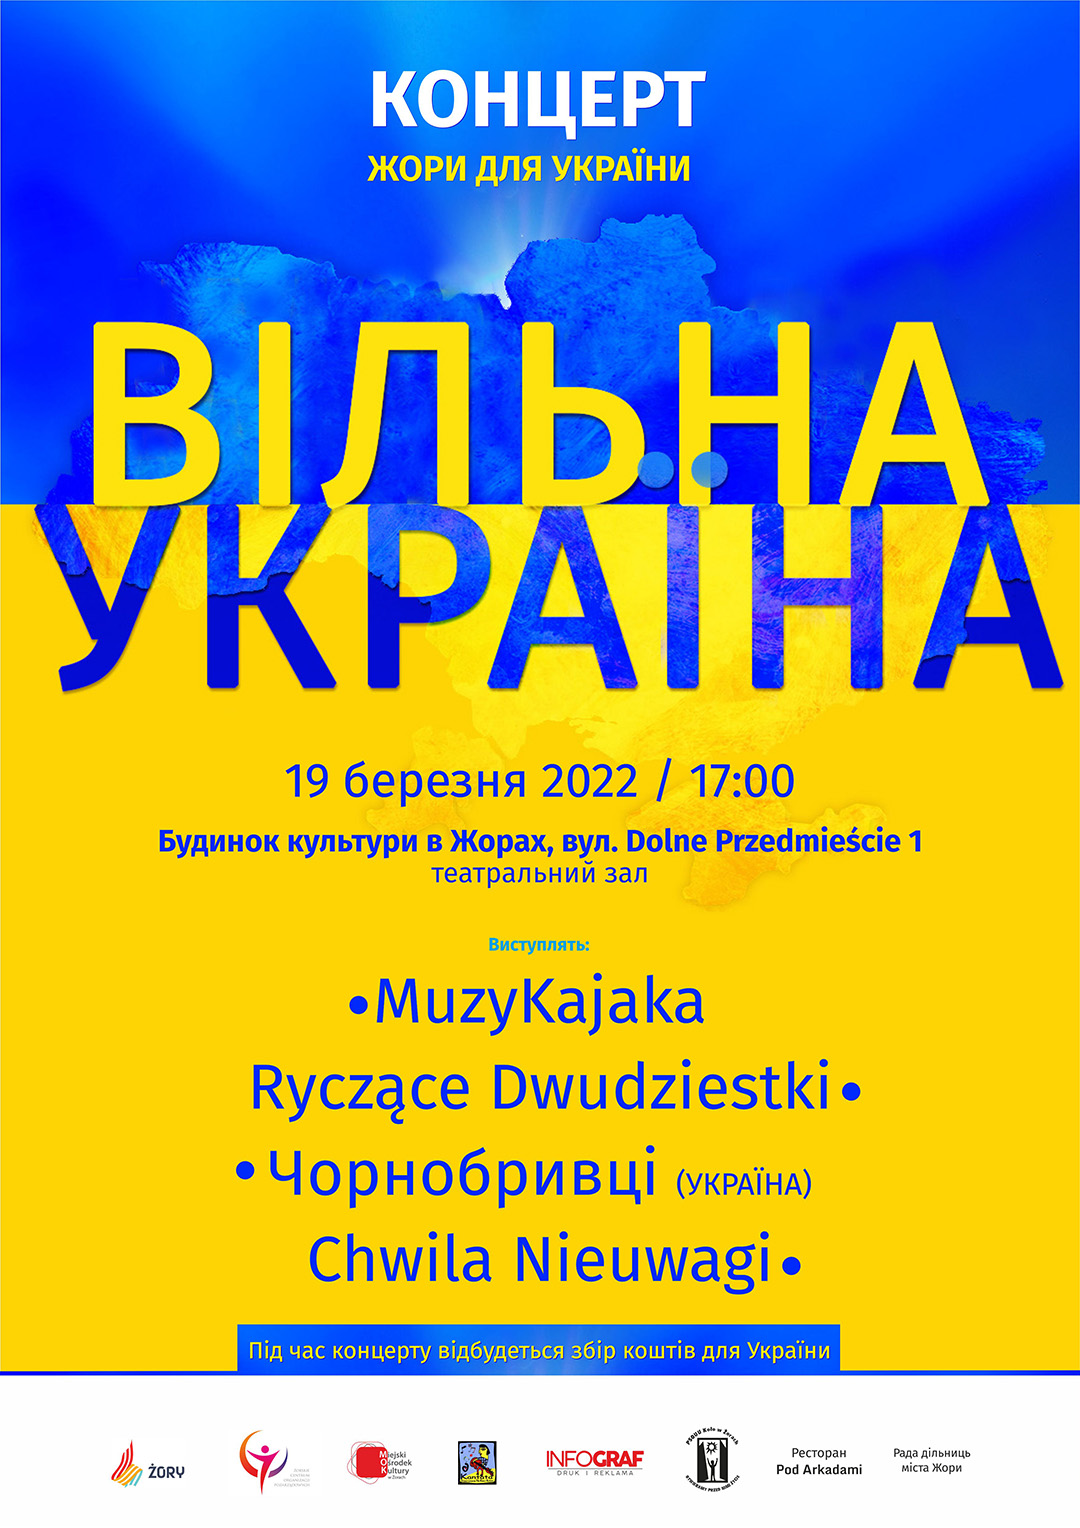 plakat w ukraińskich niebiesko-żółtych barwach z informacjami na plakacie